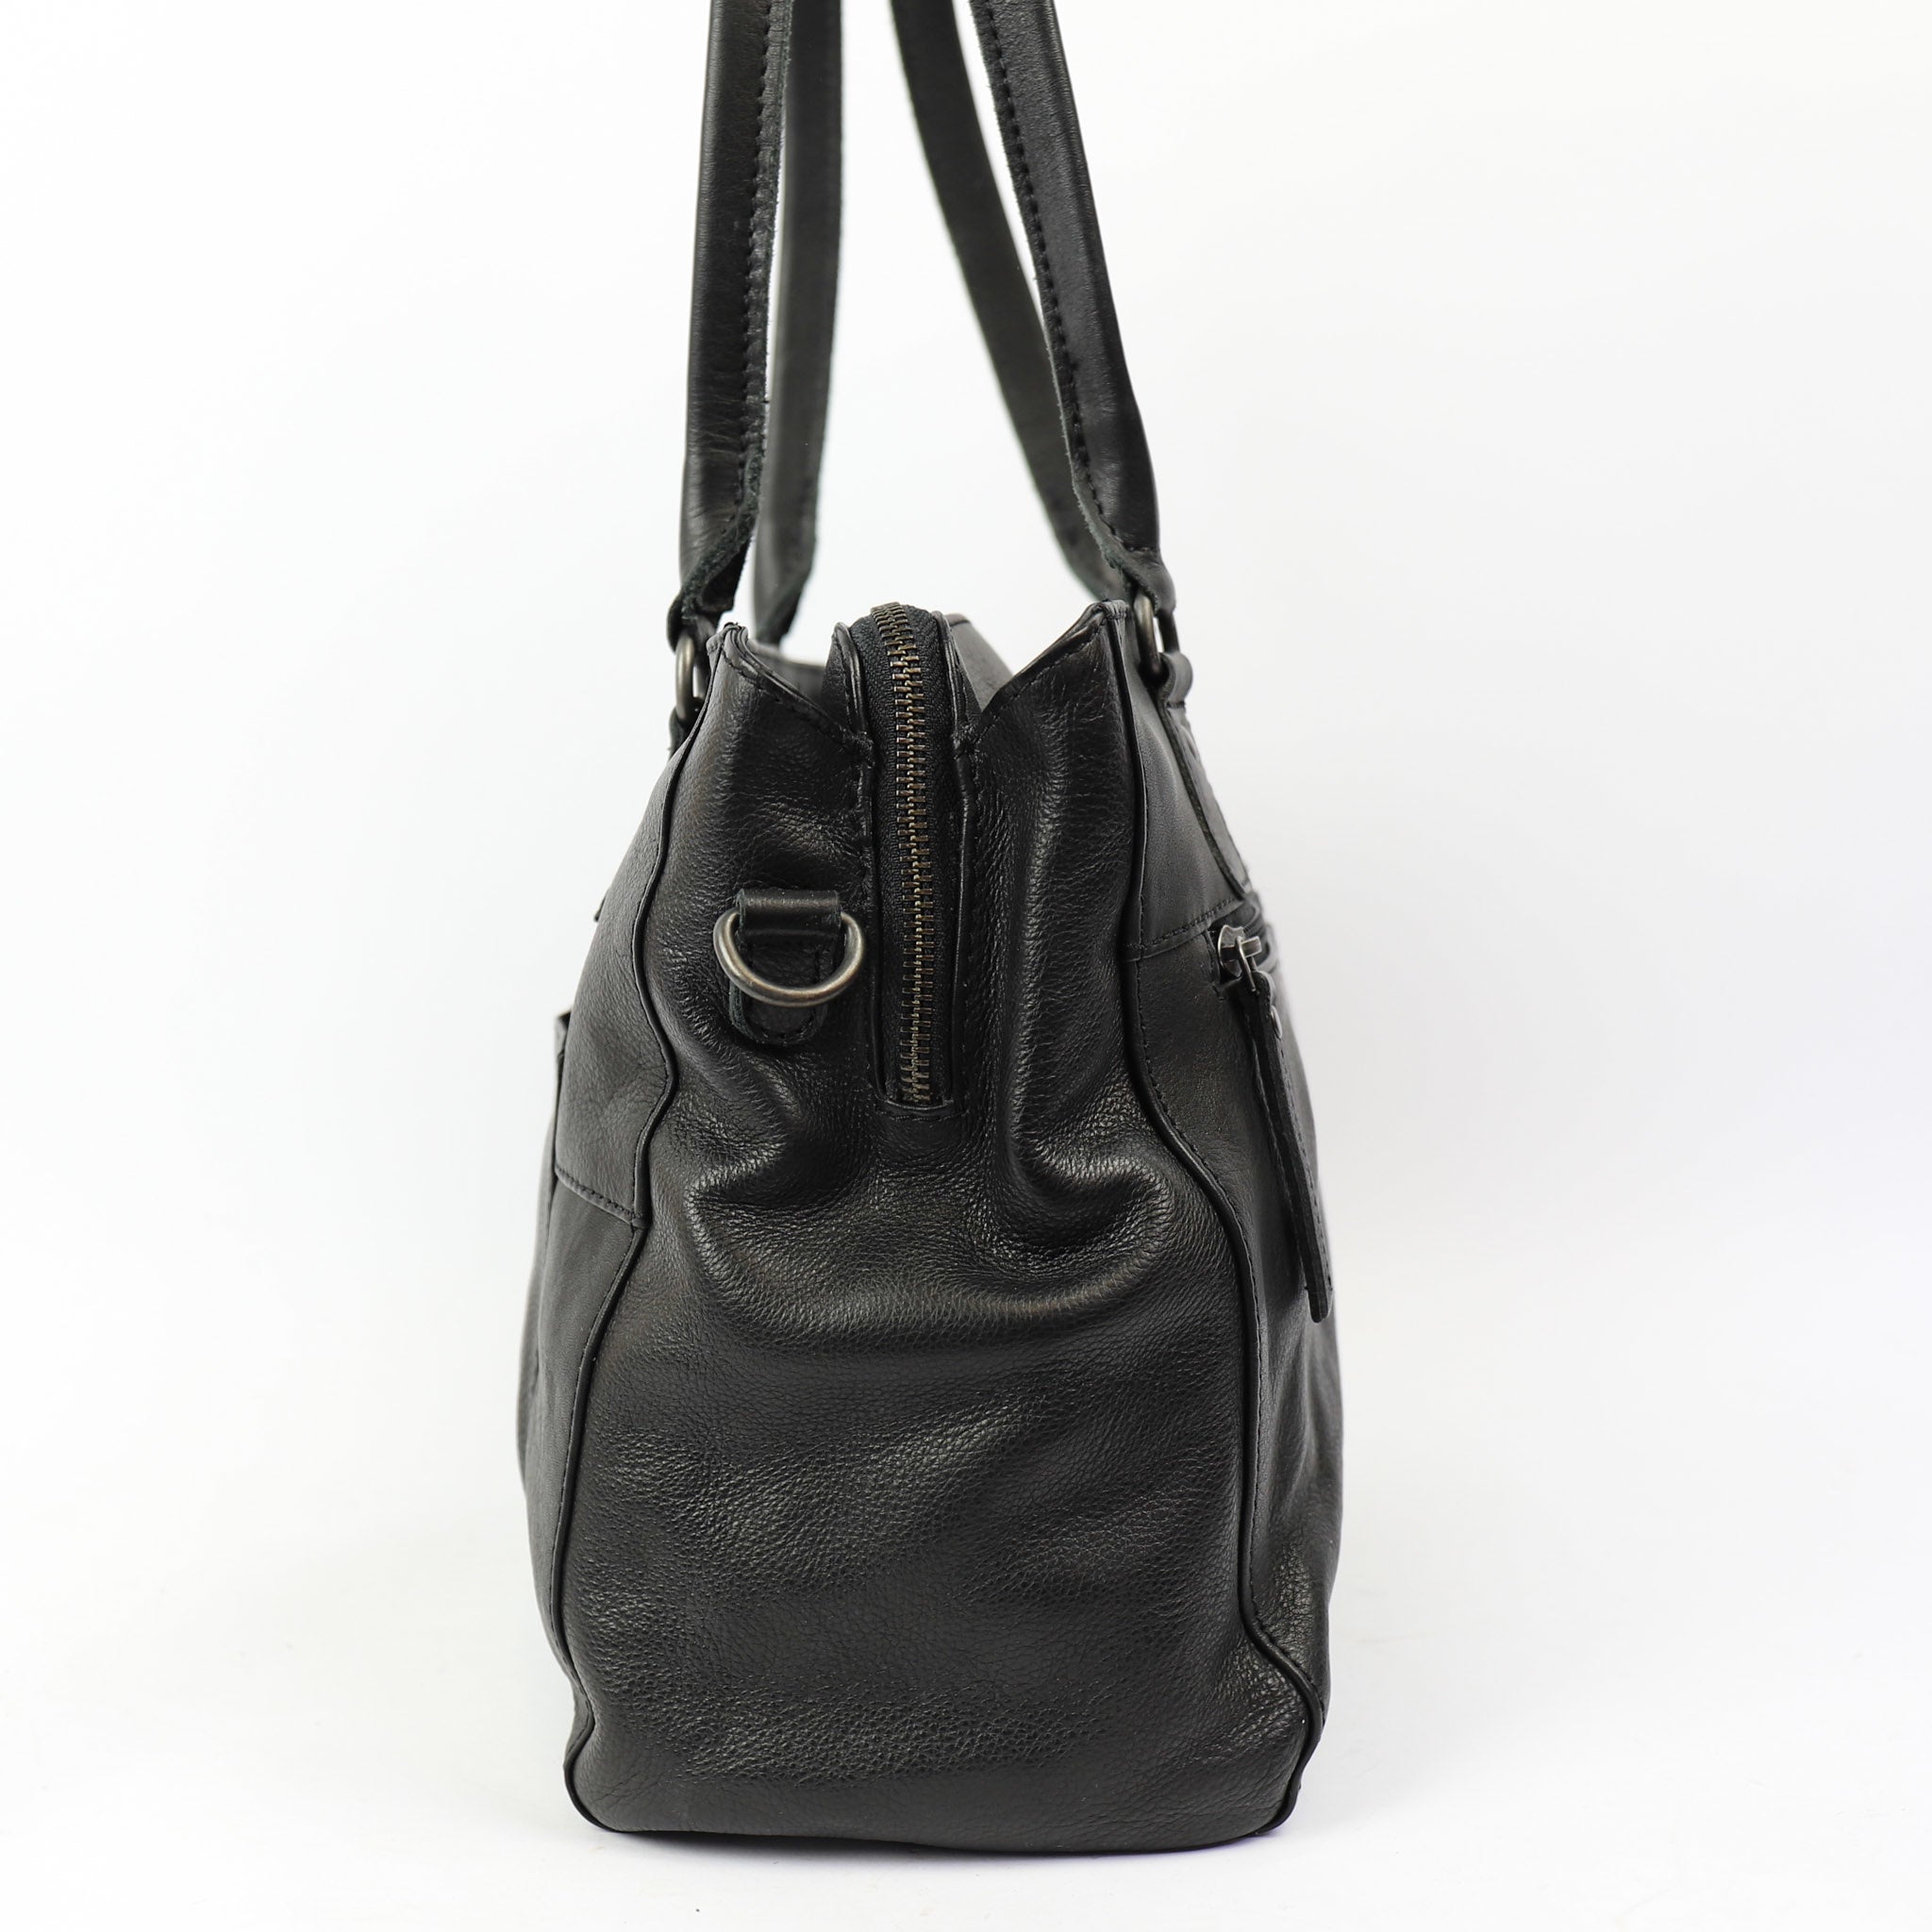 Hand/shoulder bag 'Ankie' black - CP 1263